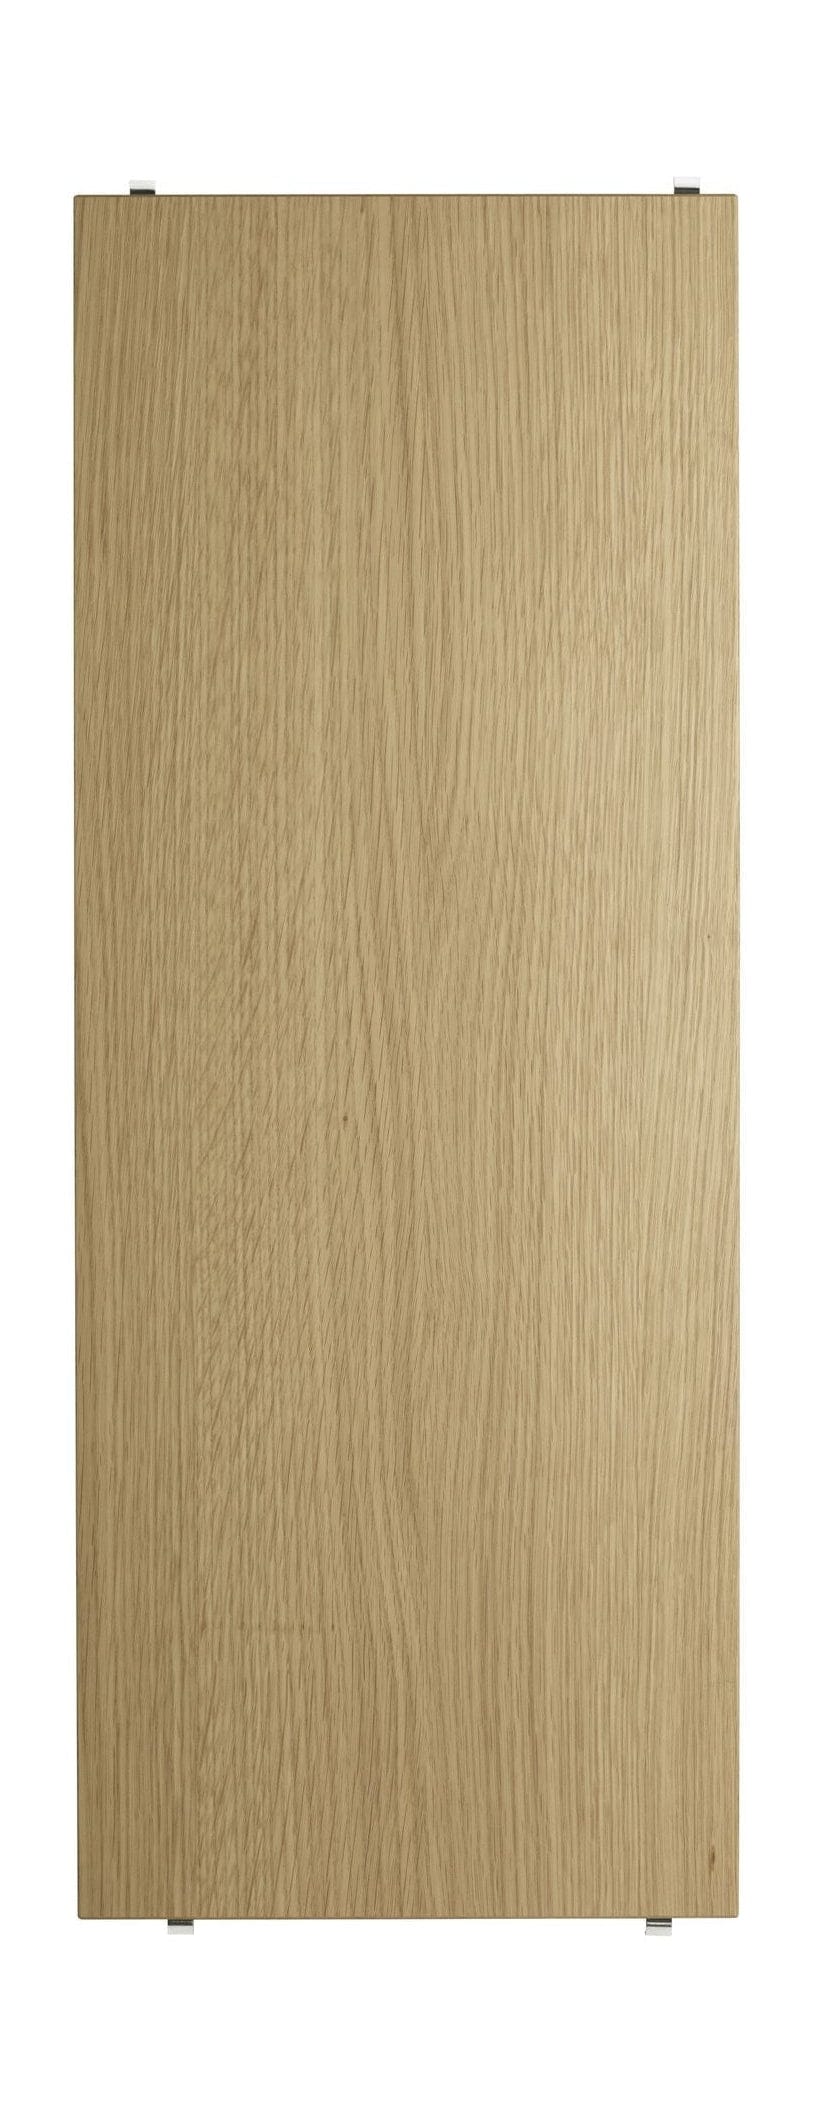 String Furniture Jousijärjestelmän hylly, joka on valmistettu Wood Oak 30x78 cm, sarja 3